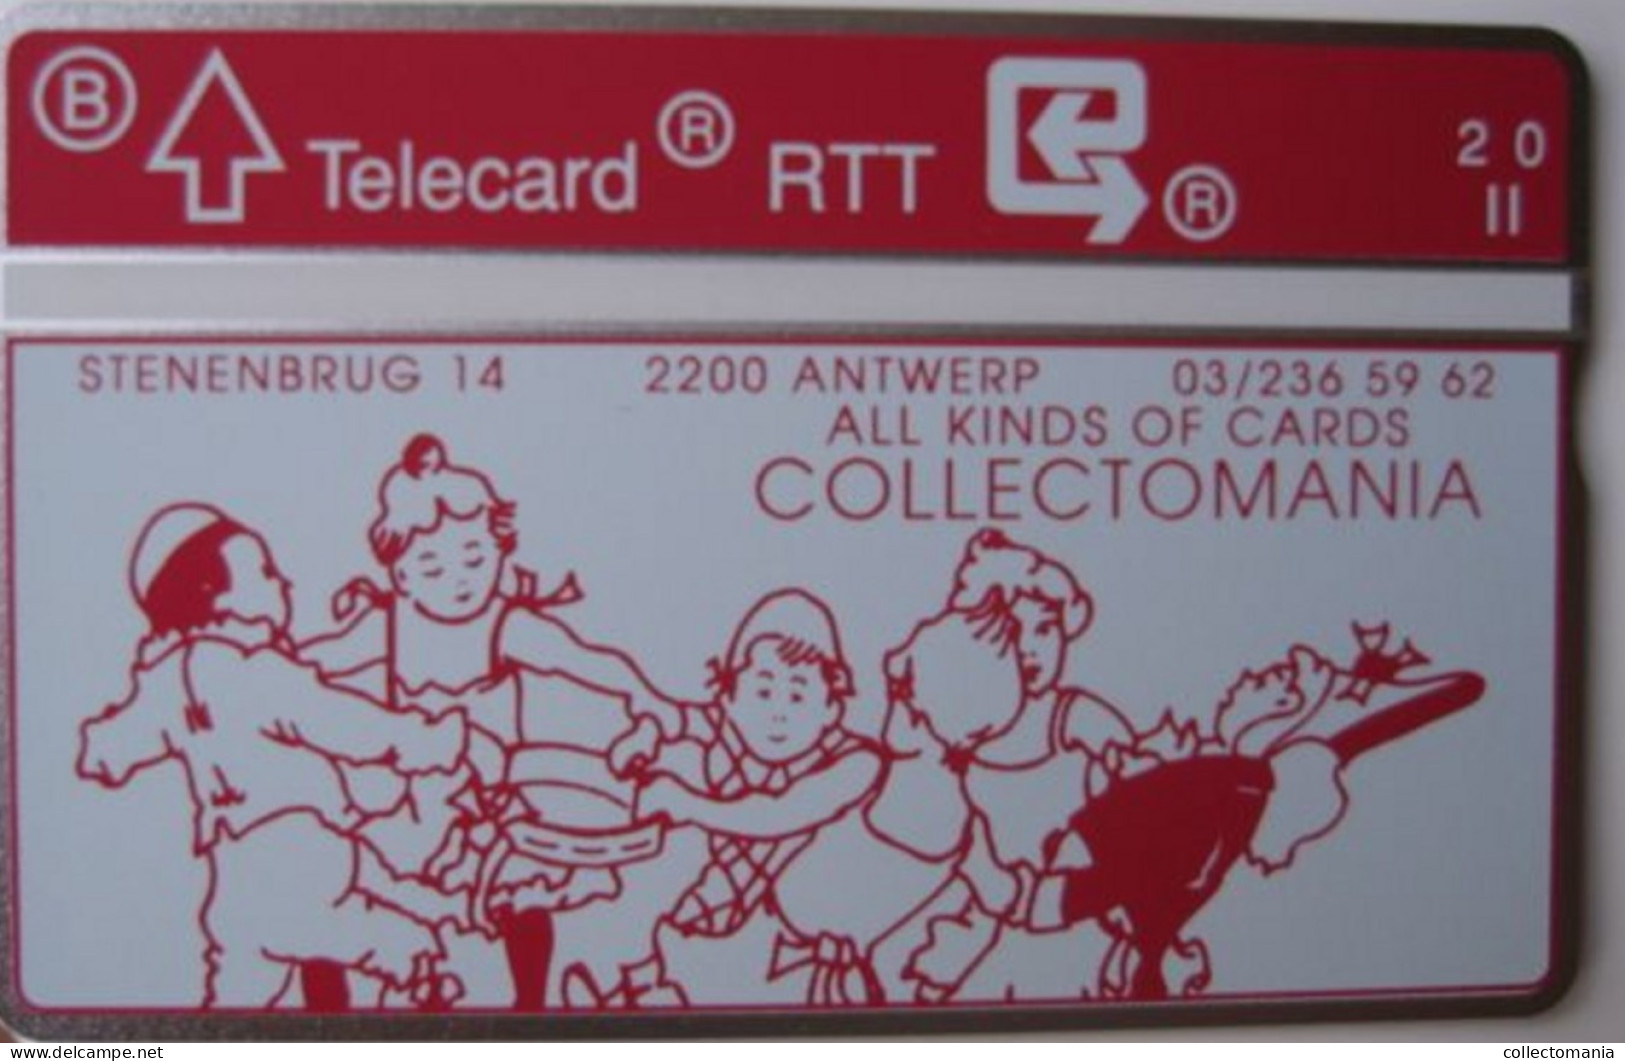 Onze Eerste Belgische Telecard Telefoonkaart Van 1990  Collectomania  R.T.T.  BELGACOM TELEPHONE NIET Gebruikt - Ohne Chip